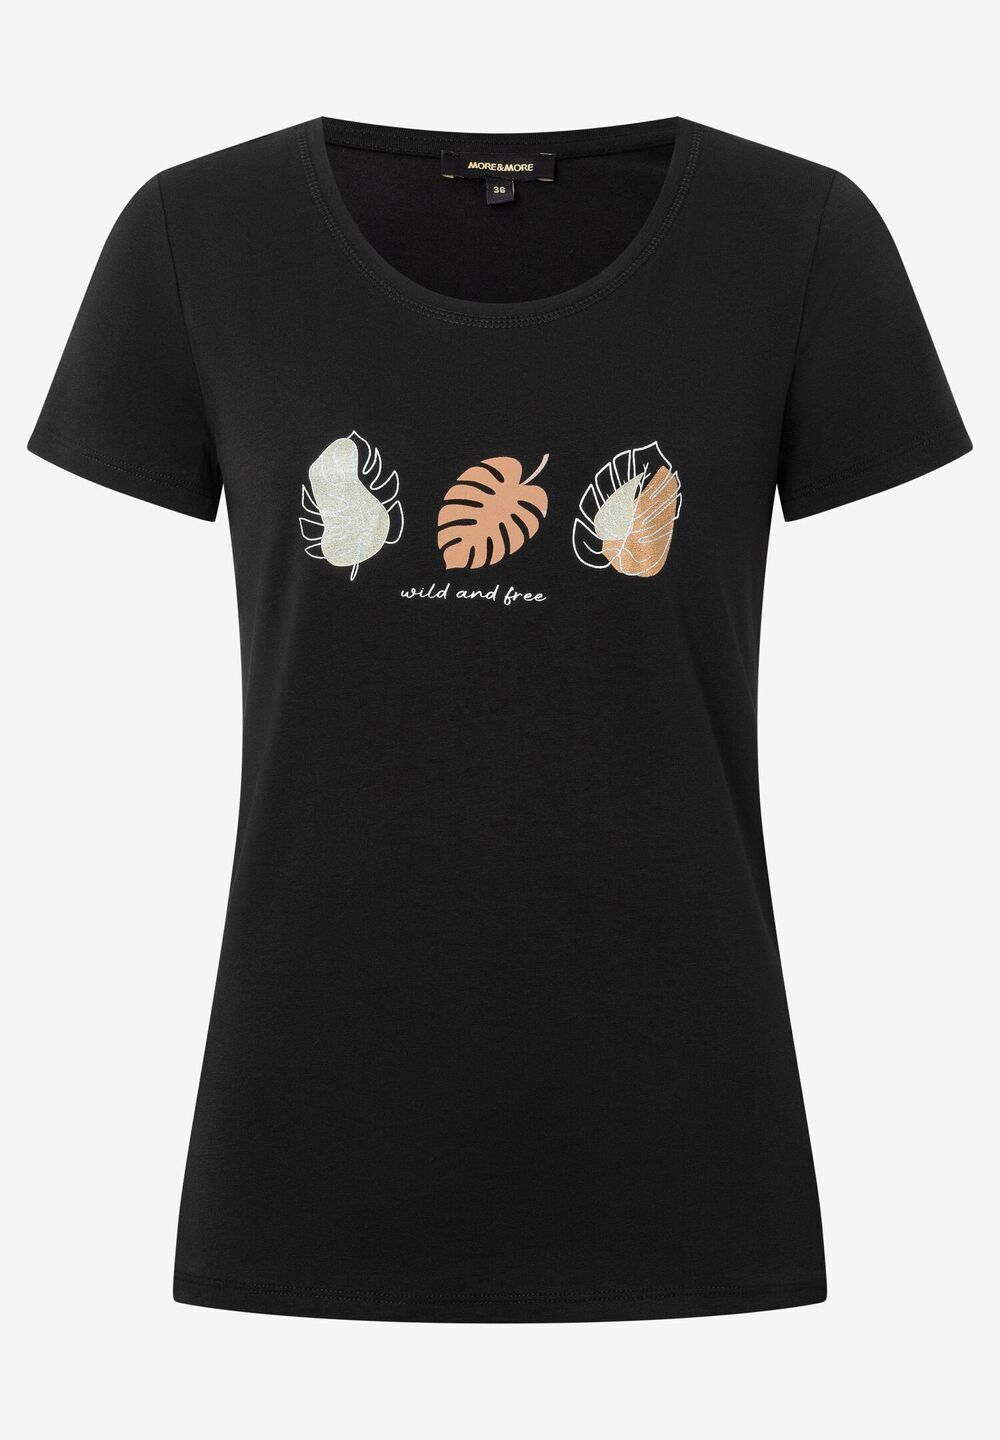 T-Shirt, schwarz, Blätter-Motiv, Sommer-Kollektion, schwarz Frontansicht